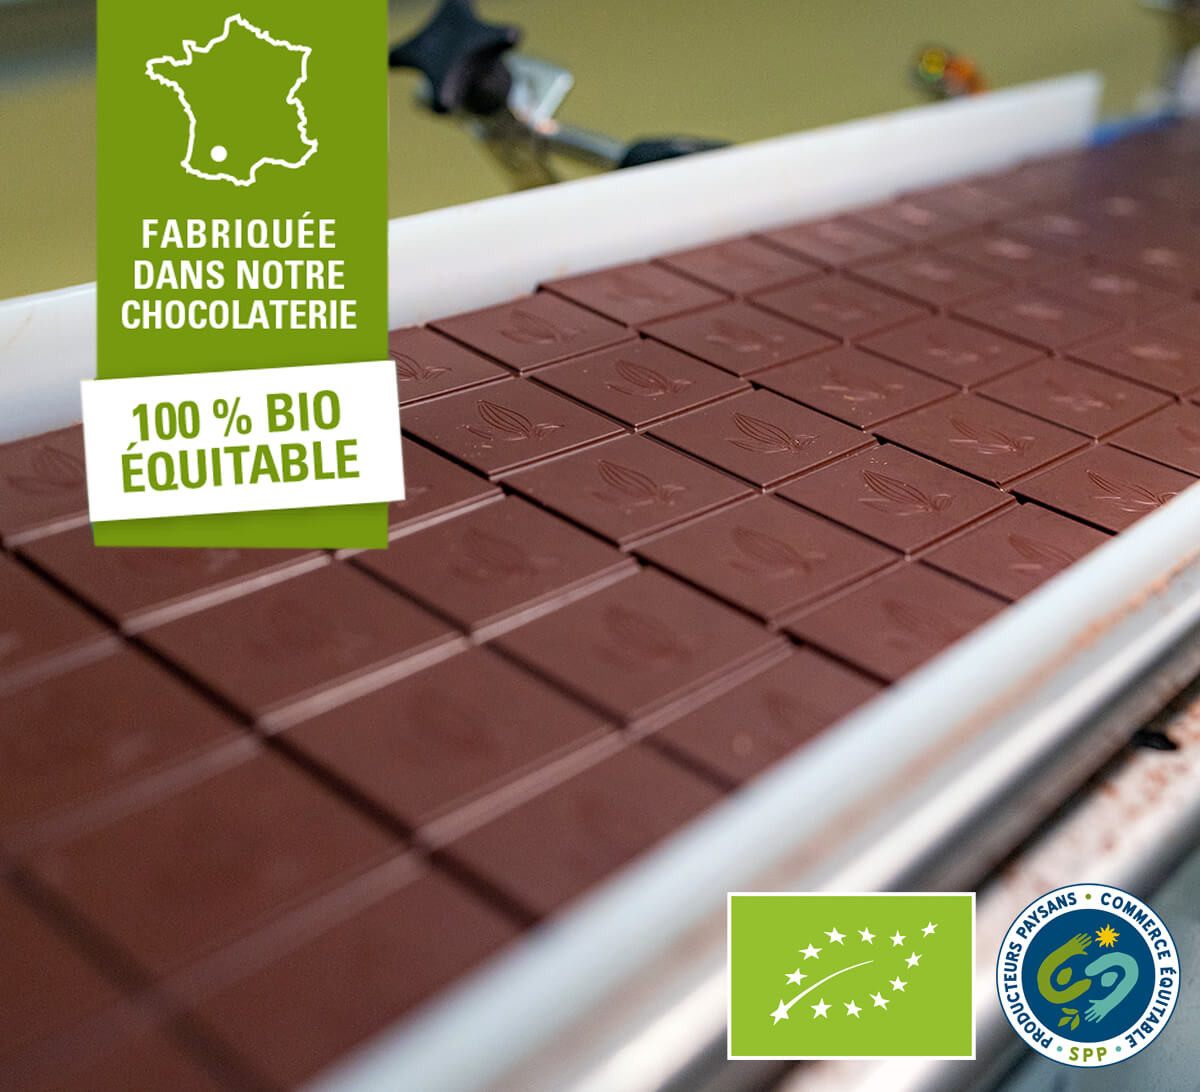 Cette tablette de chocolat noir 88% de Côte d'Ivoire est fabriquée dans notre chocolaterie 100% équitable et bio du Gers.